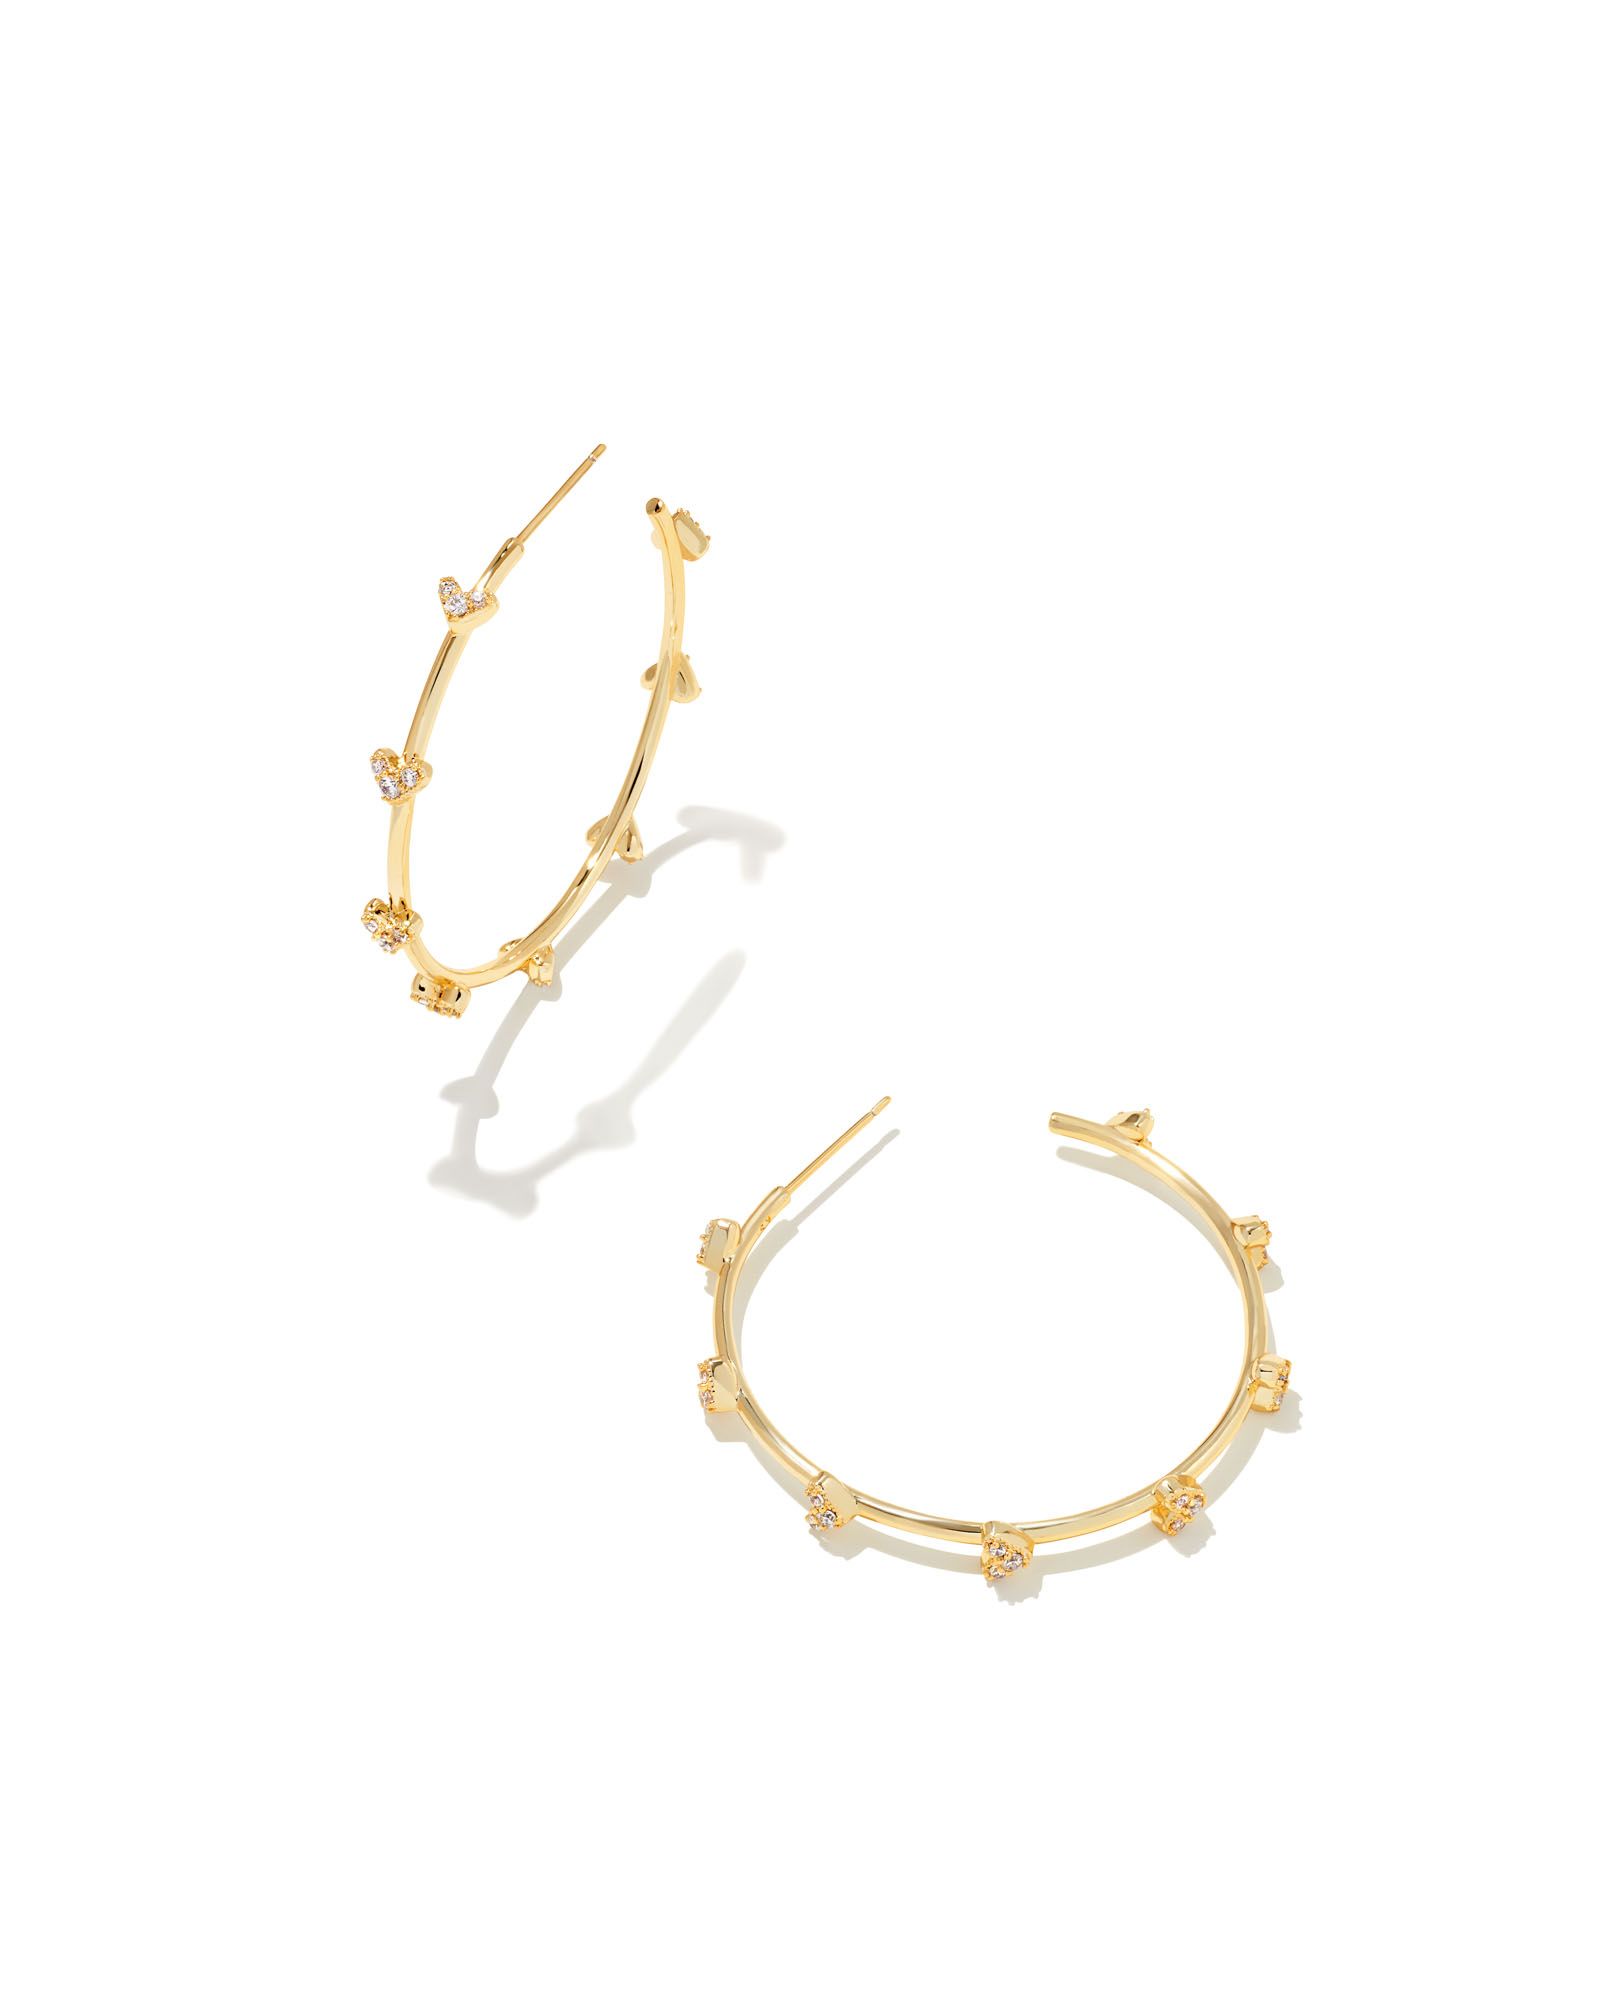 Haven Gold Crystal Heart Hoop Earrings in White Crystal | Kendra Scott | Kendra Scott